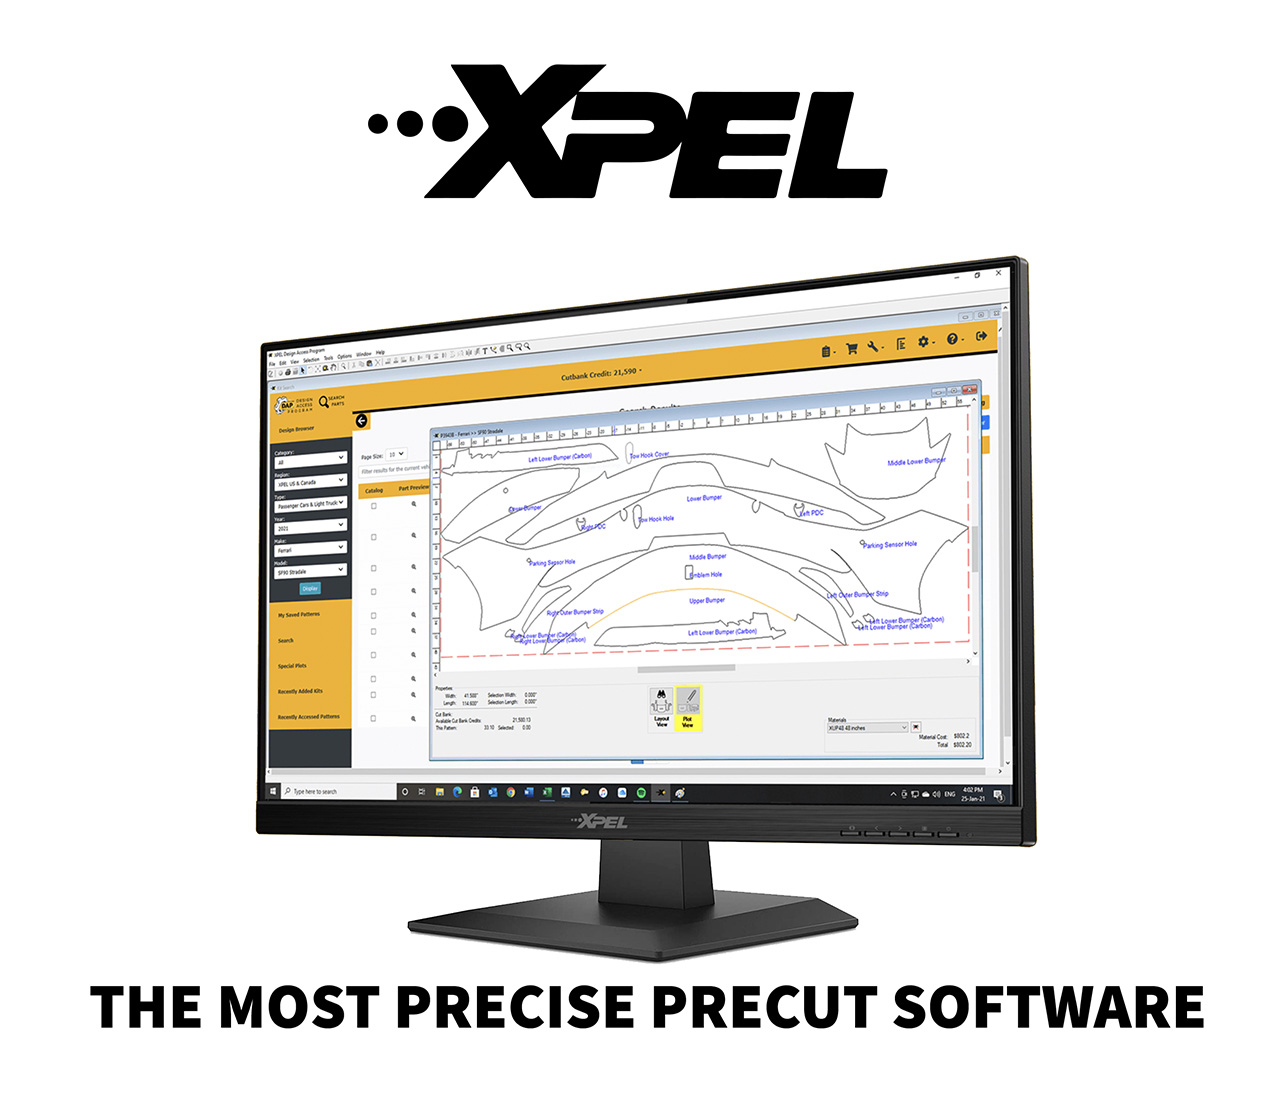 XPEL Precut Software